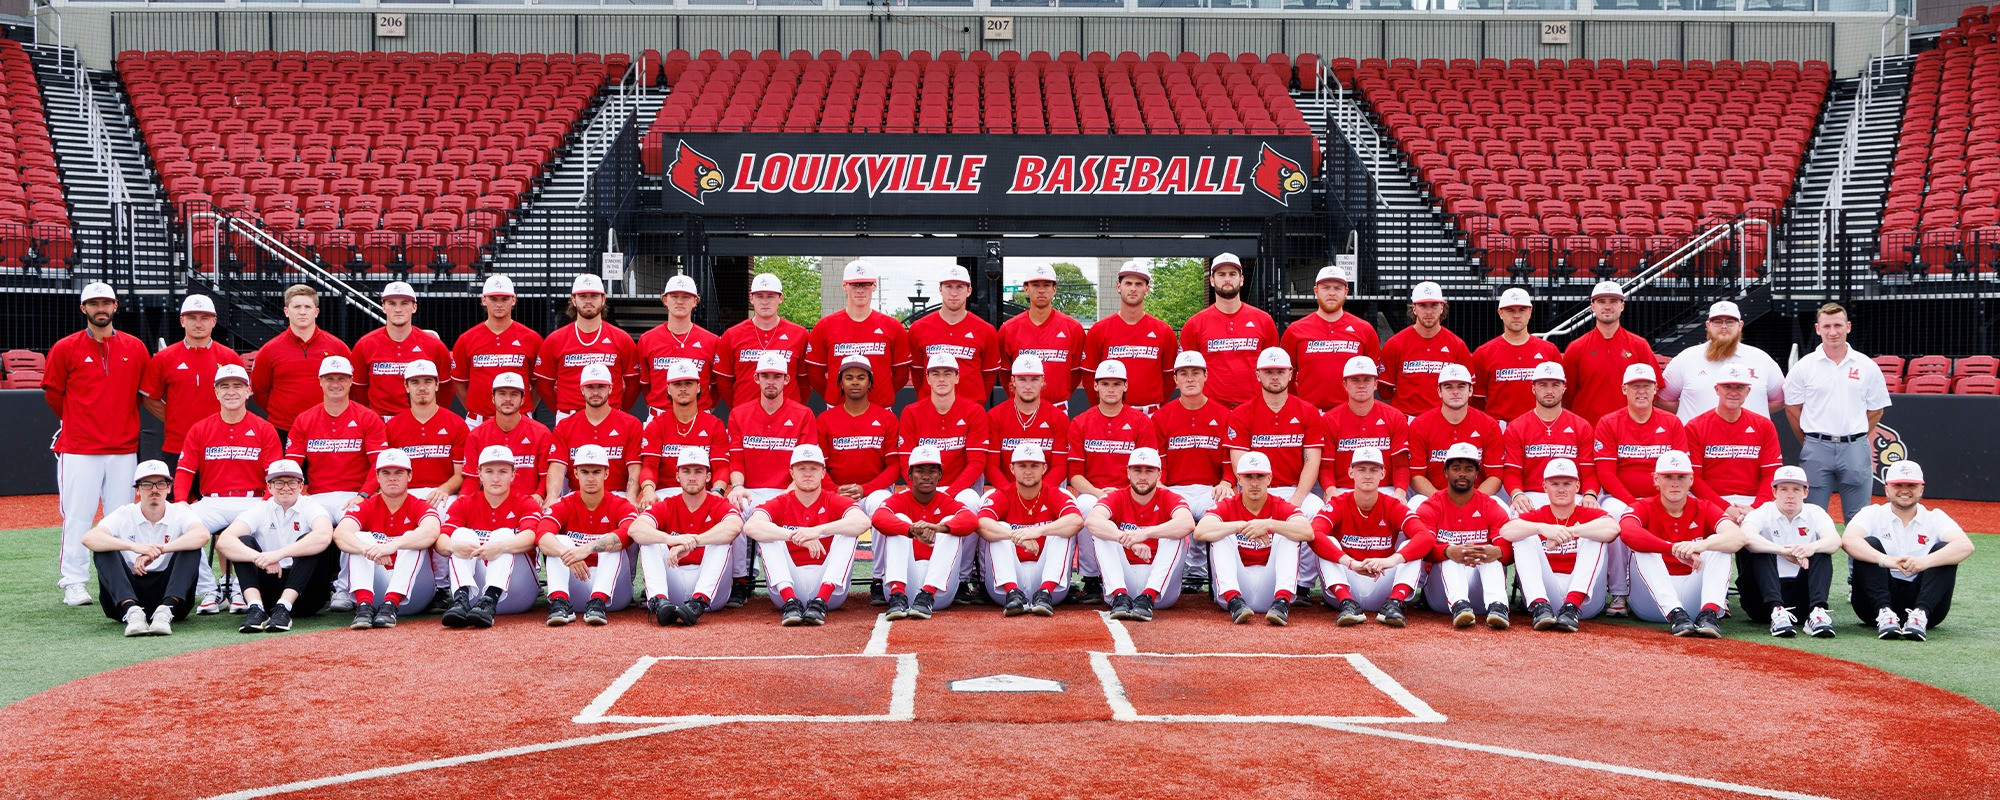 Louisville Baseball on X: 𝙏𝙝𝙚 𝙛𝙞𝙧𝙨𝙩 𝙨𝙩𝙚𝙥 𝙤𝙣 𝙩𝙝𝙚